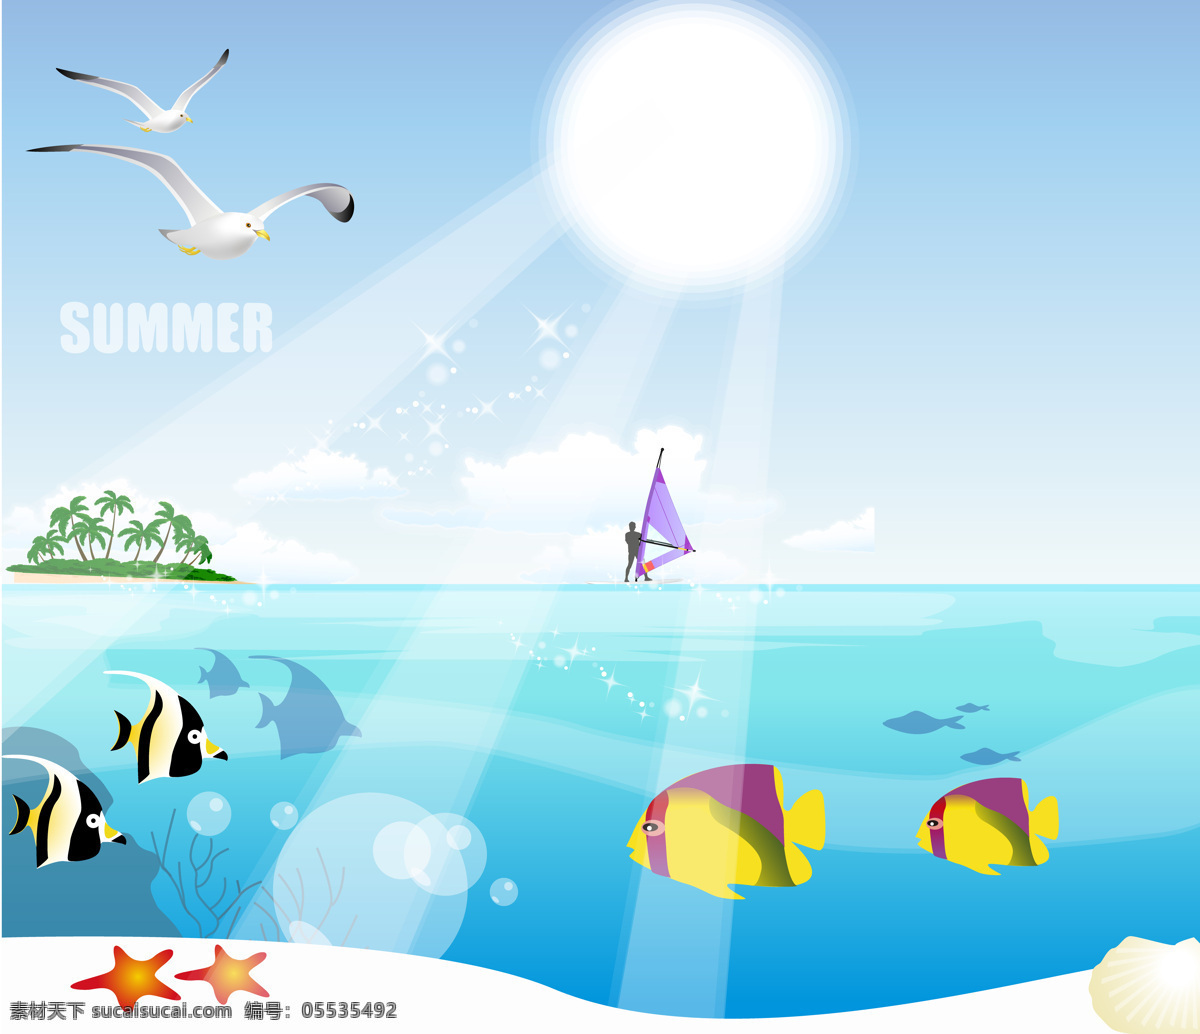 海鸥 鱼 帆船 岛屿 大海 蓝天 阳光 海星 自然景观 自然风光